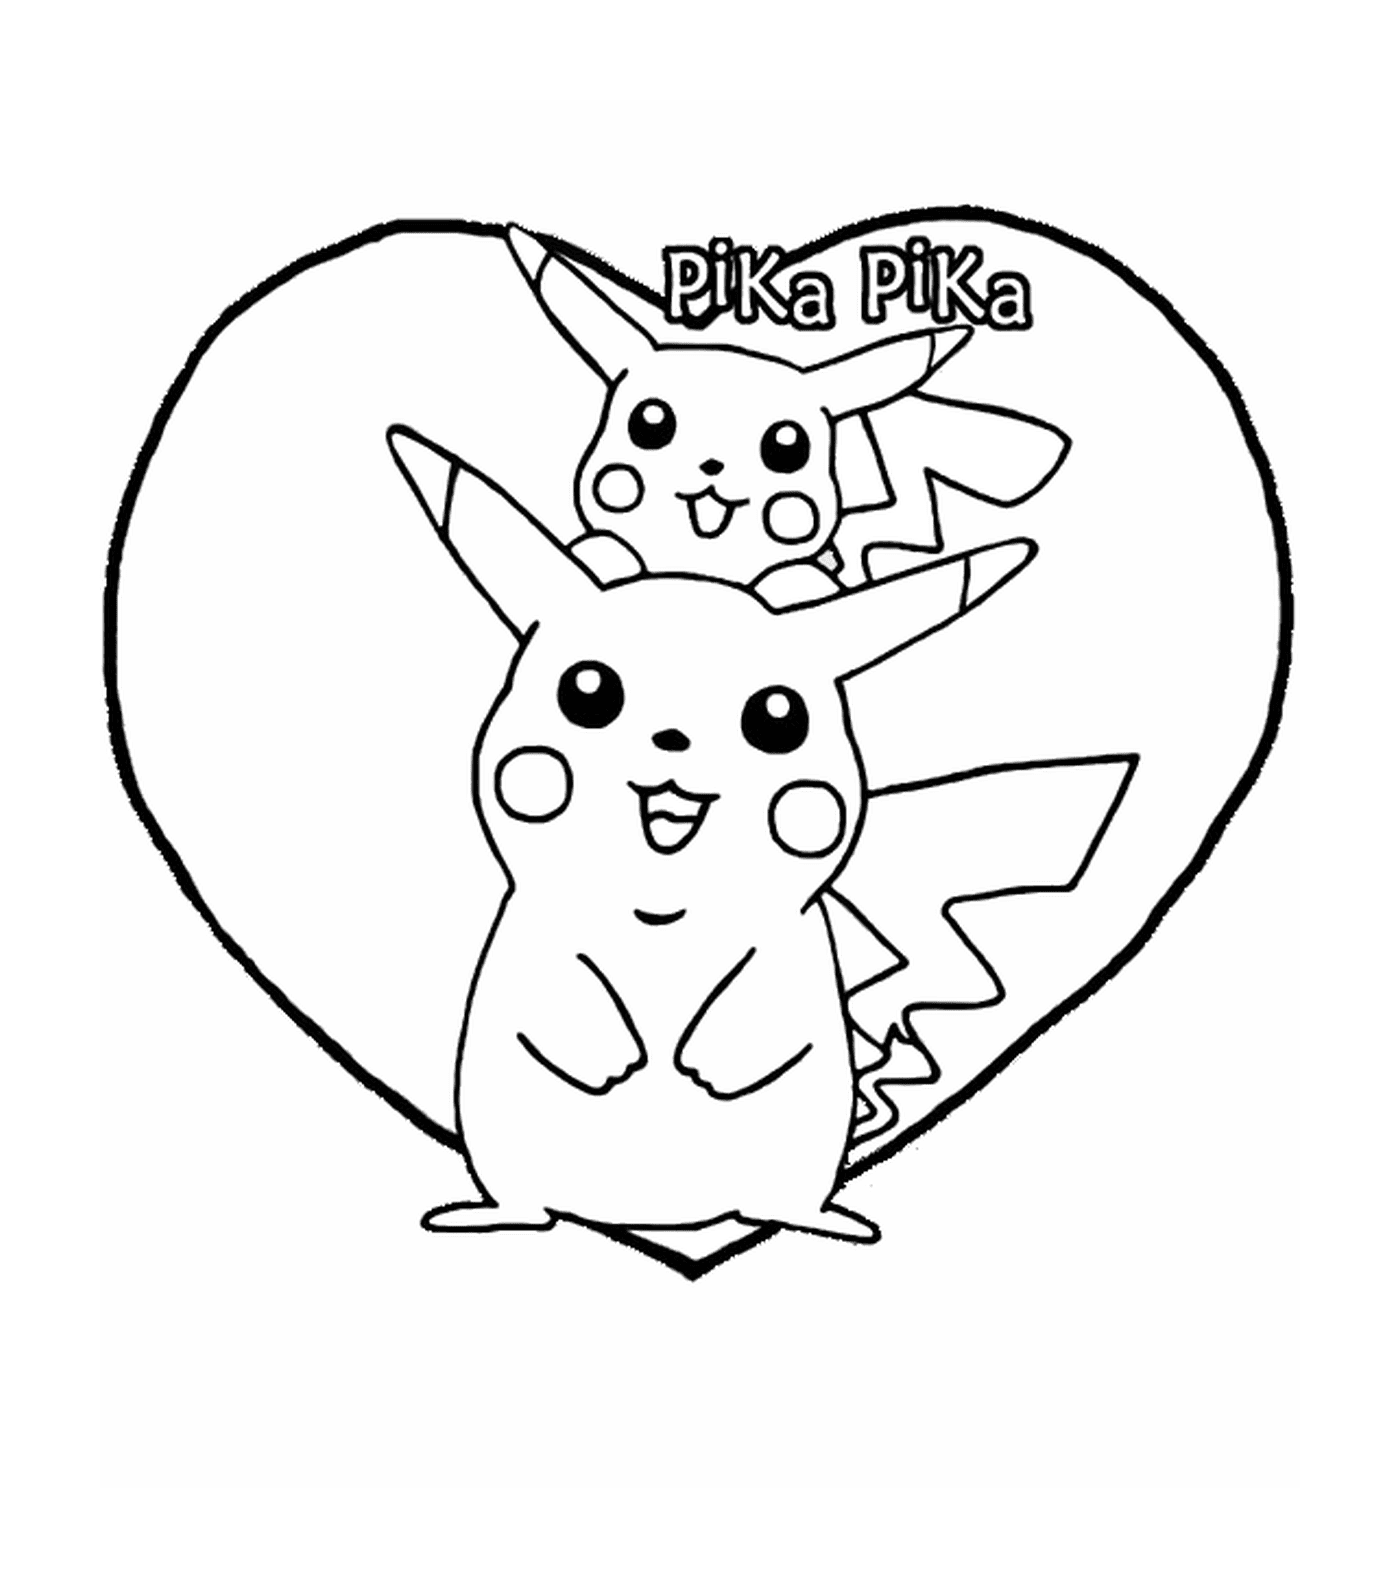  Pikachu e Pika em um coração 